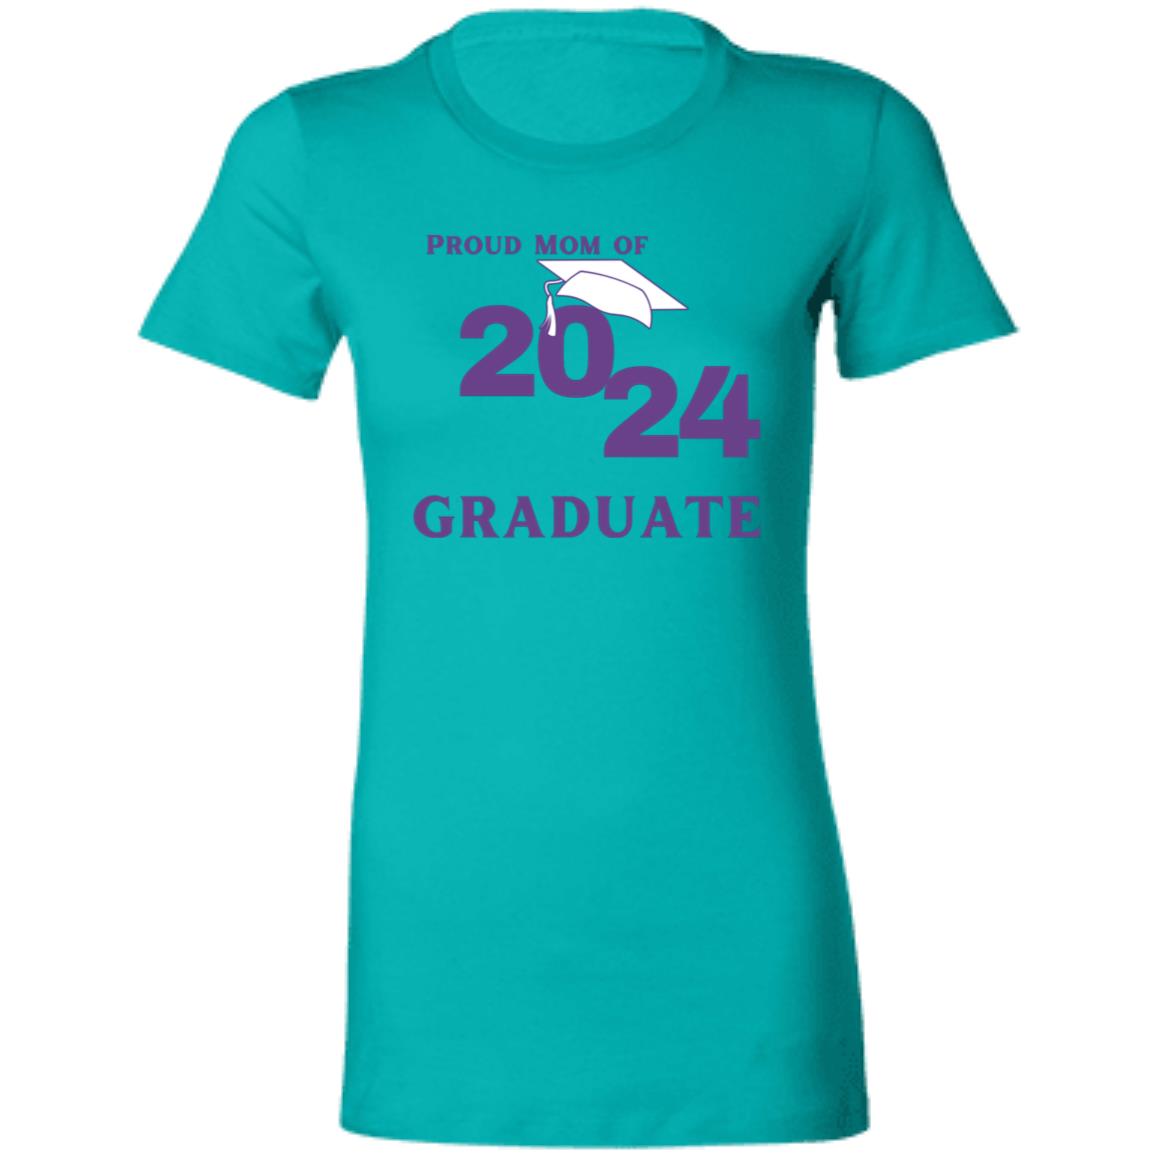 Proud Mom -- Graduate -- Ladies' Favorite T-Shirt